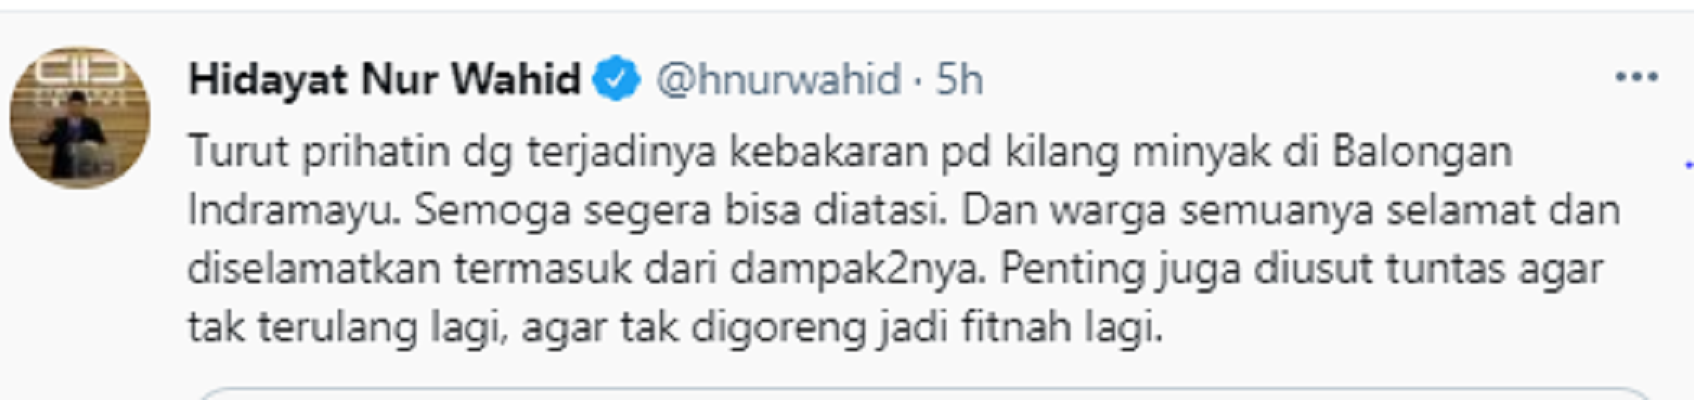 Cuitan Hidayat Nur Wahid soal insiden kebakaran di kilang minyak Pertamina Balongan, Indramayu, Senin 29 Maret 2021.